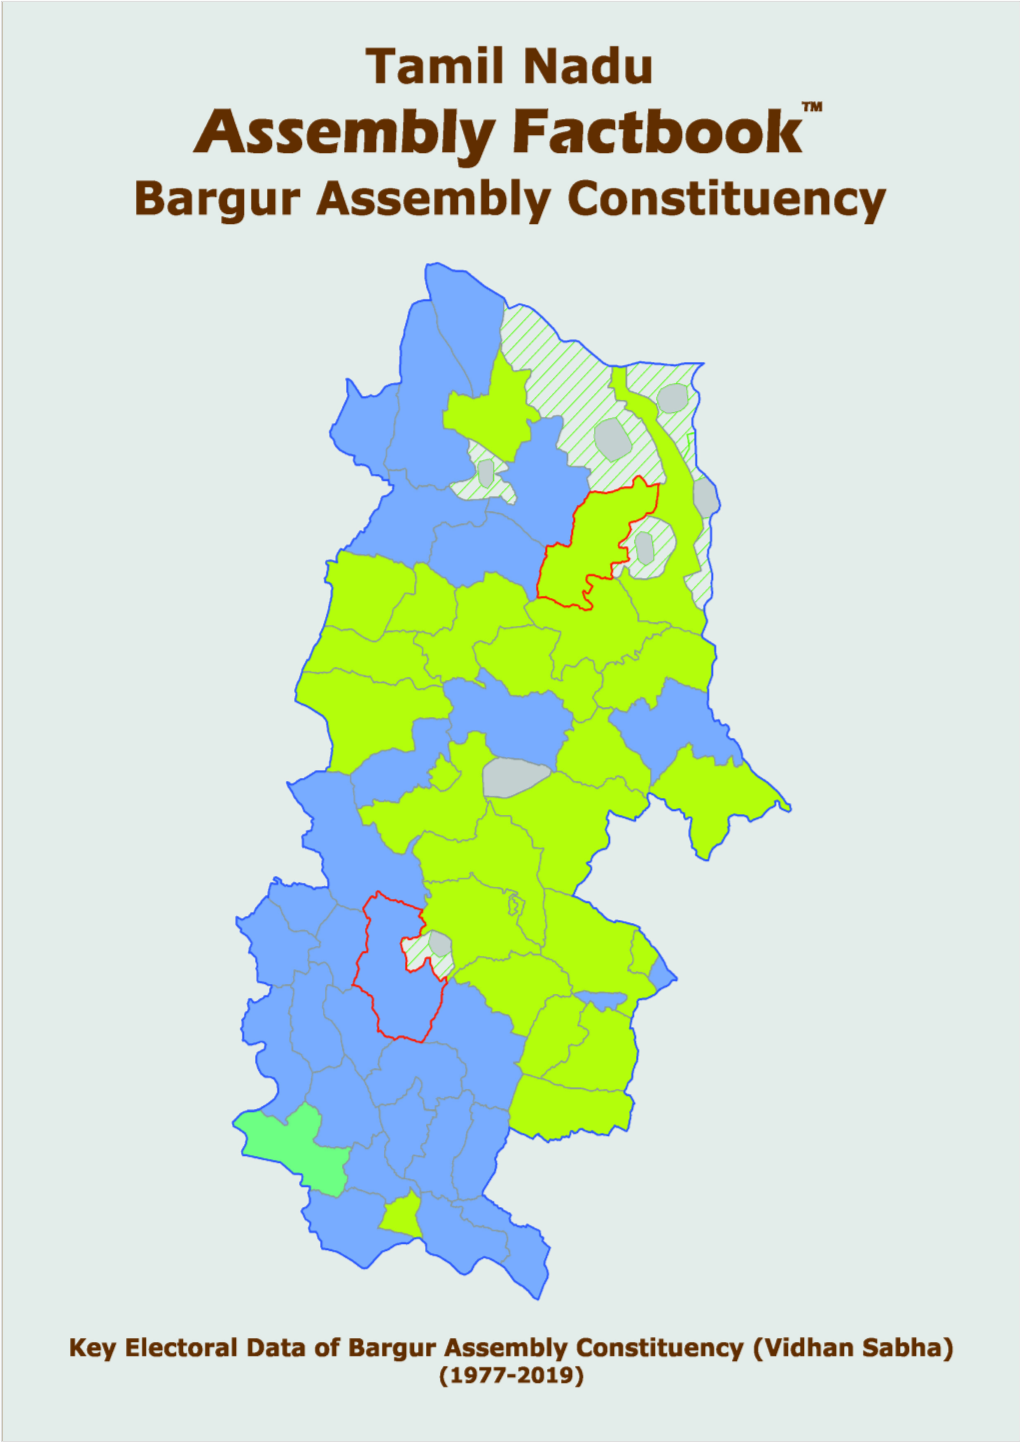 Bargur Assembly Tamil Nadu Factbook